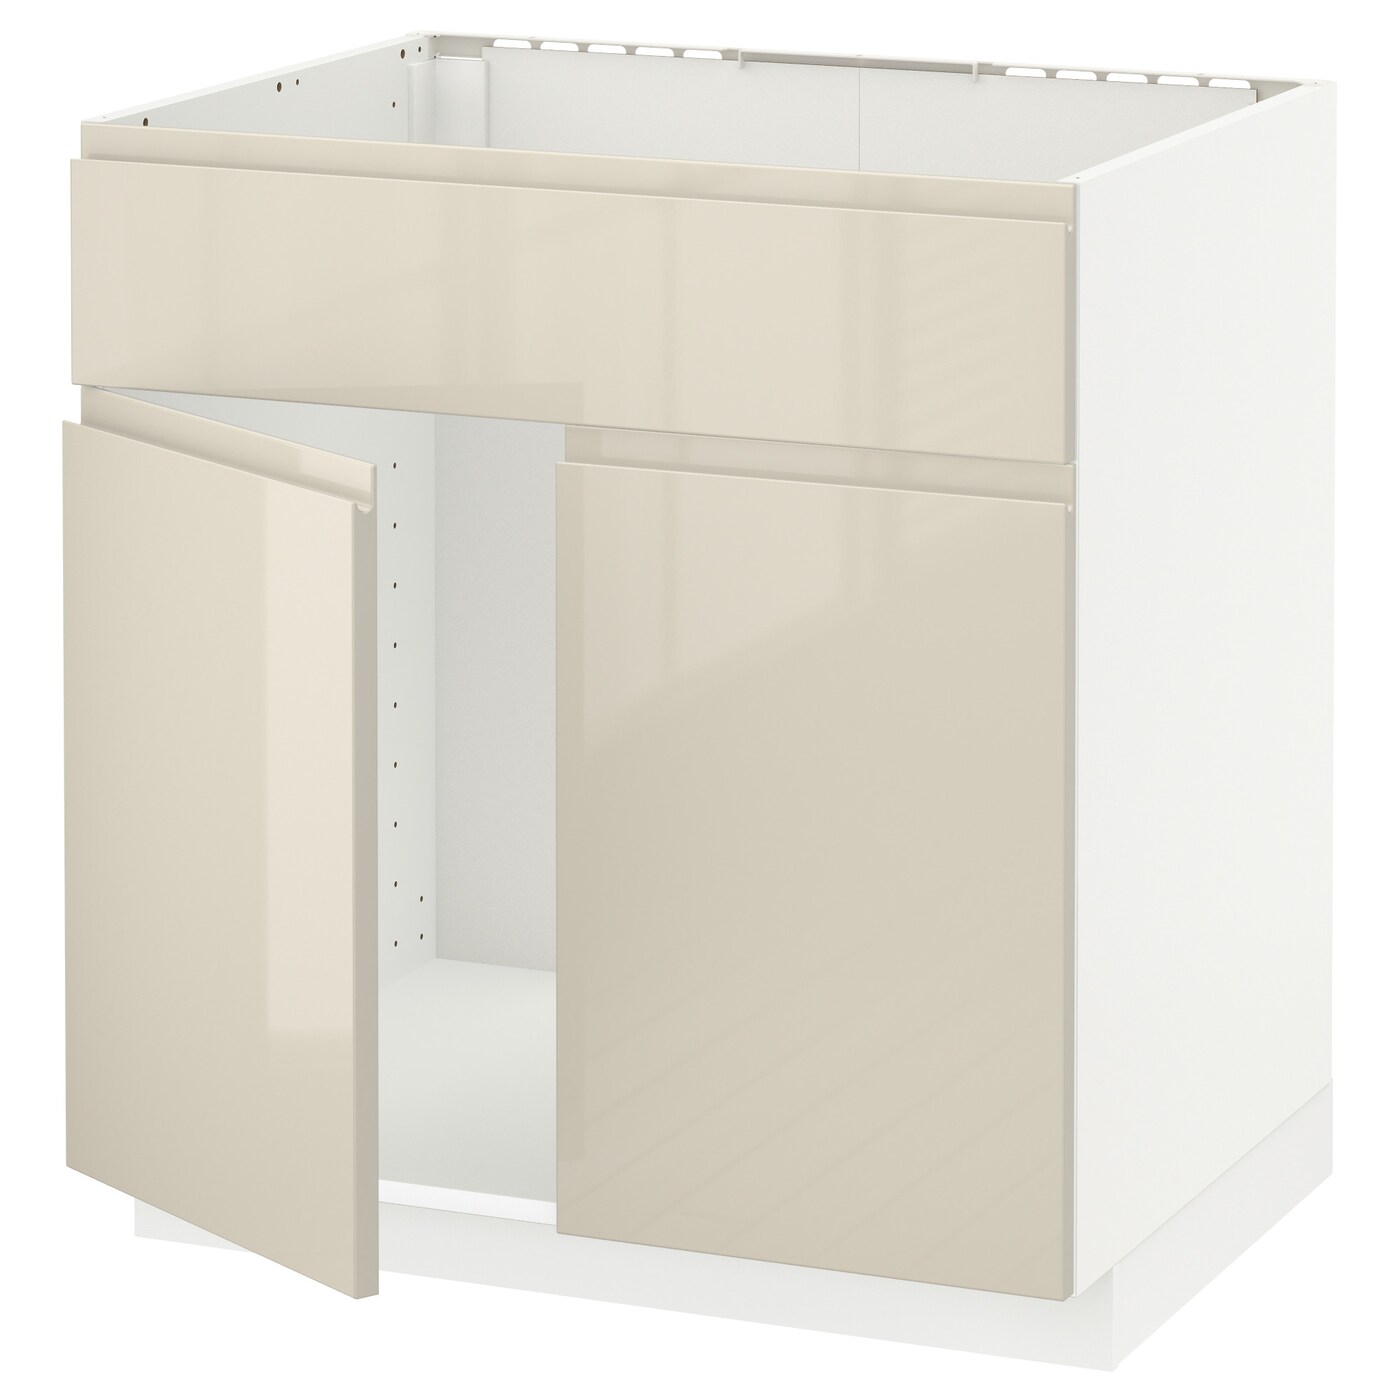 Напольный шкаф - IKEA METOD, 88x62x80см, белый/бежевый, МЕТОД ИКЕА